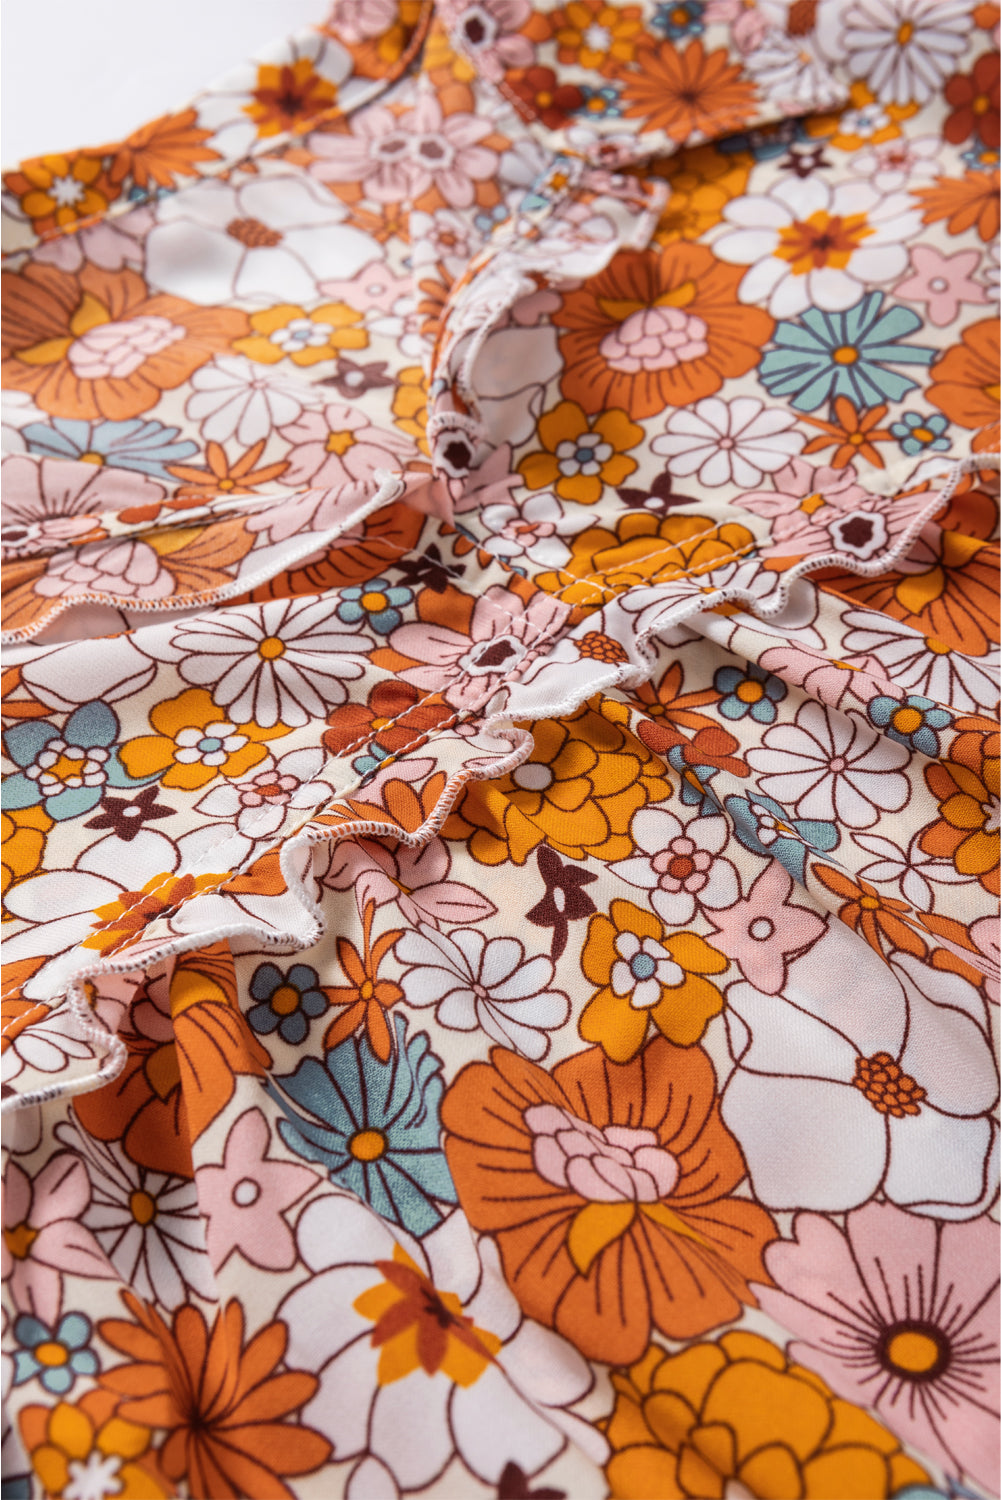 Orange Printed Split Neck Floral Pocketed Shift Dress